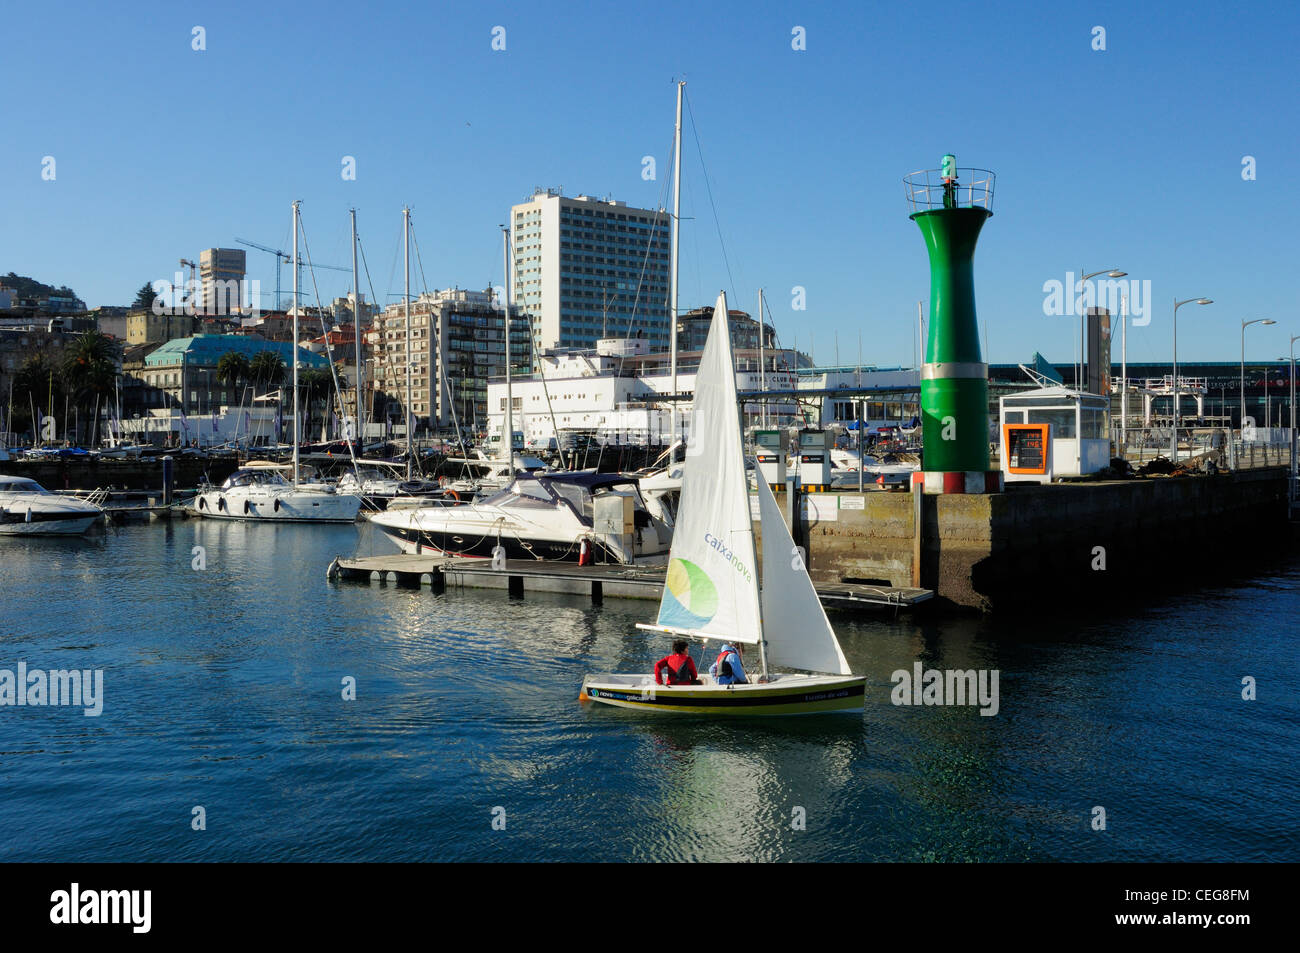 A Laxe docks and marina. Vigo, Galicia, Spain. Stock Photo